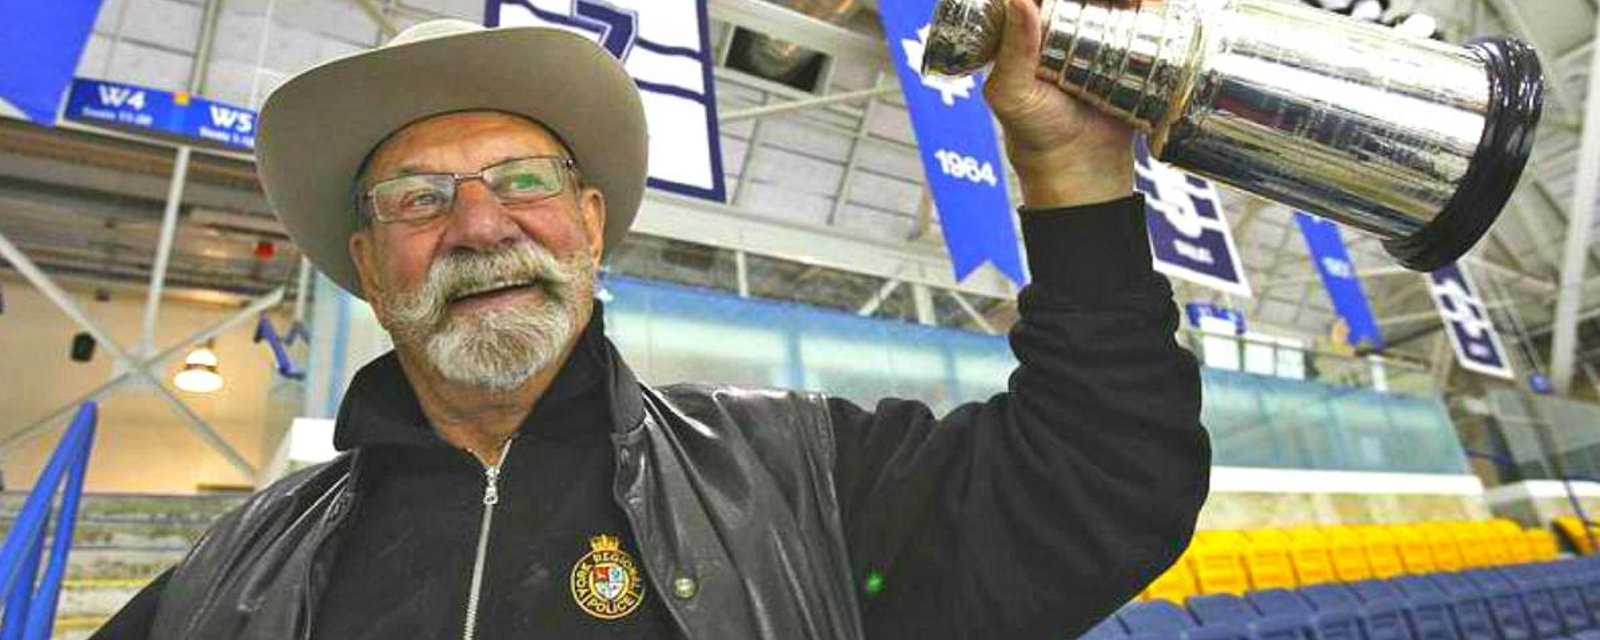 Former Leafs great Eddie Shack has passed away.